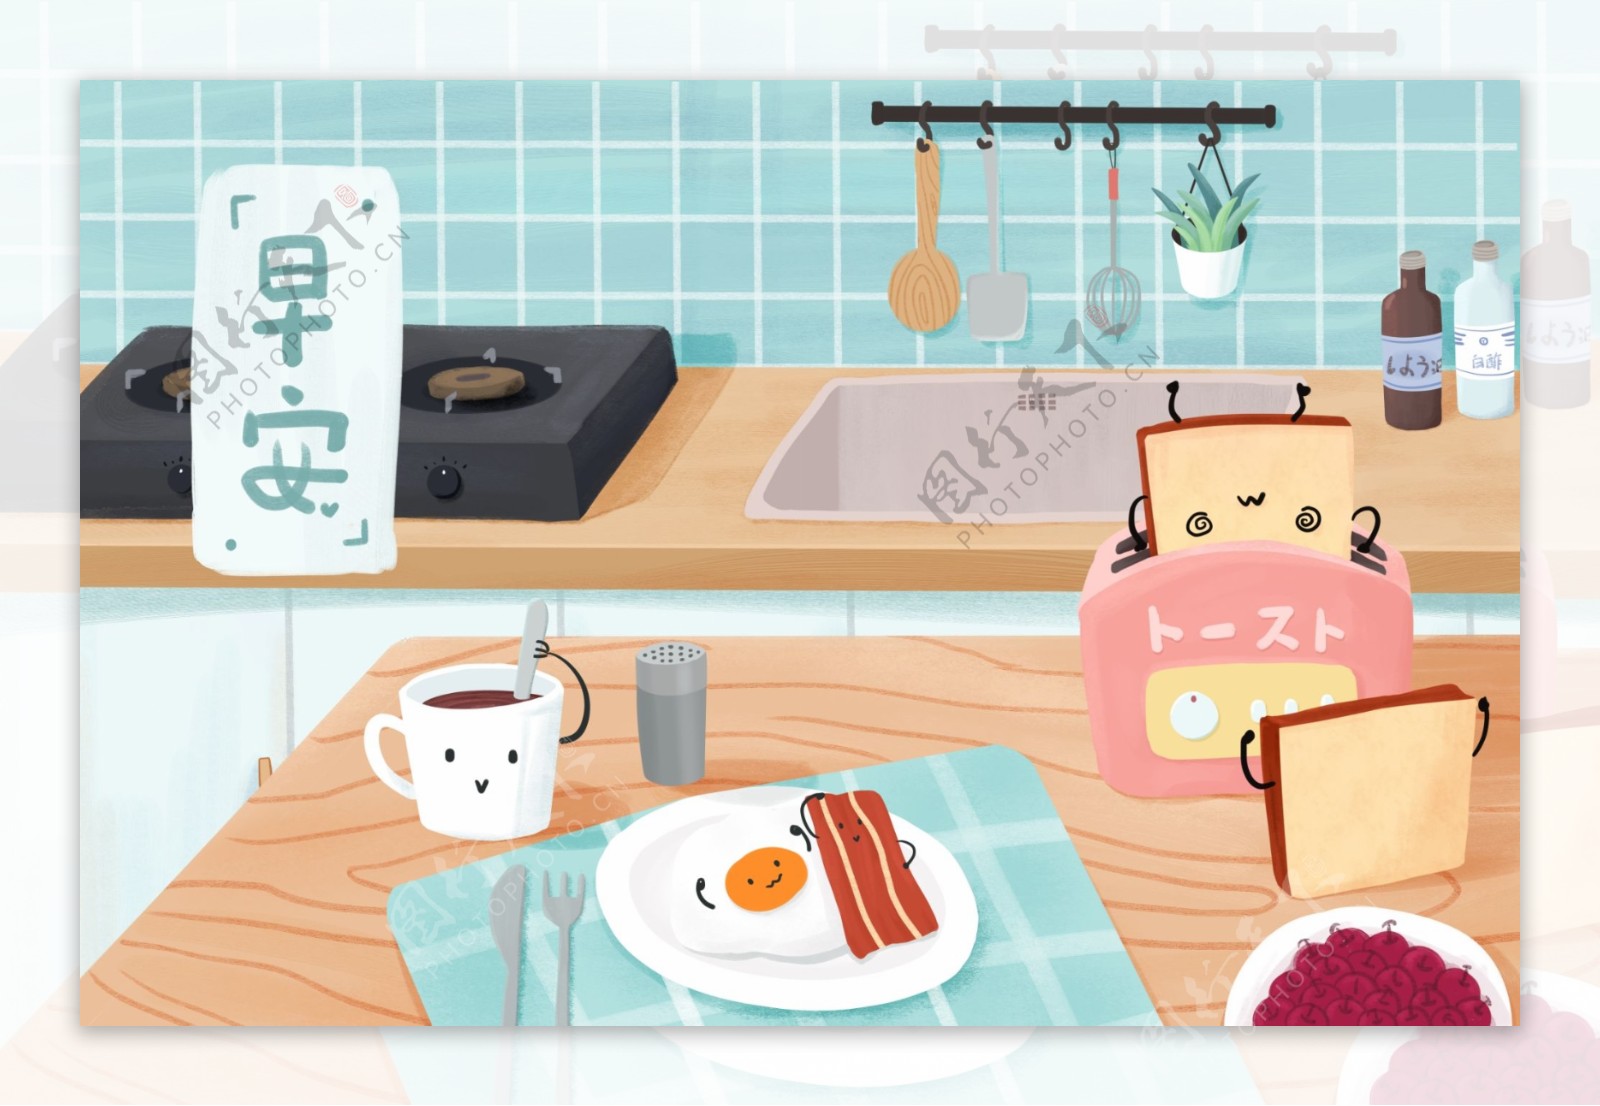 早安可爱卡通活力早餐厨房餐桌手绘插画